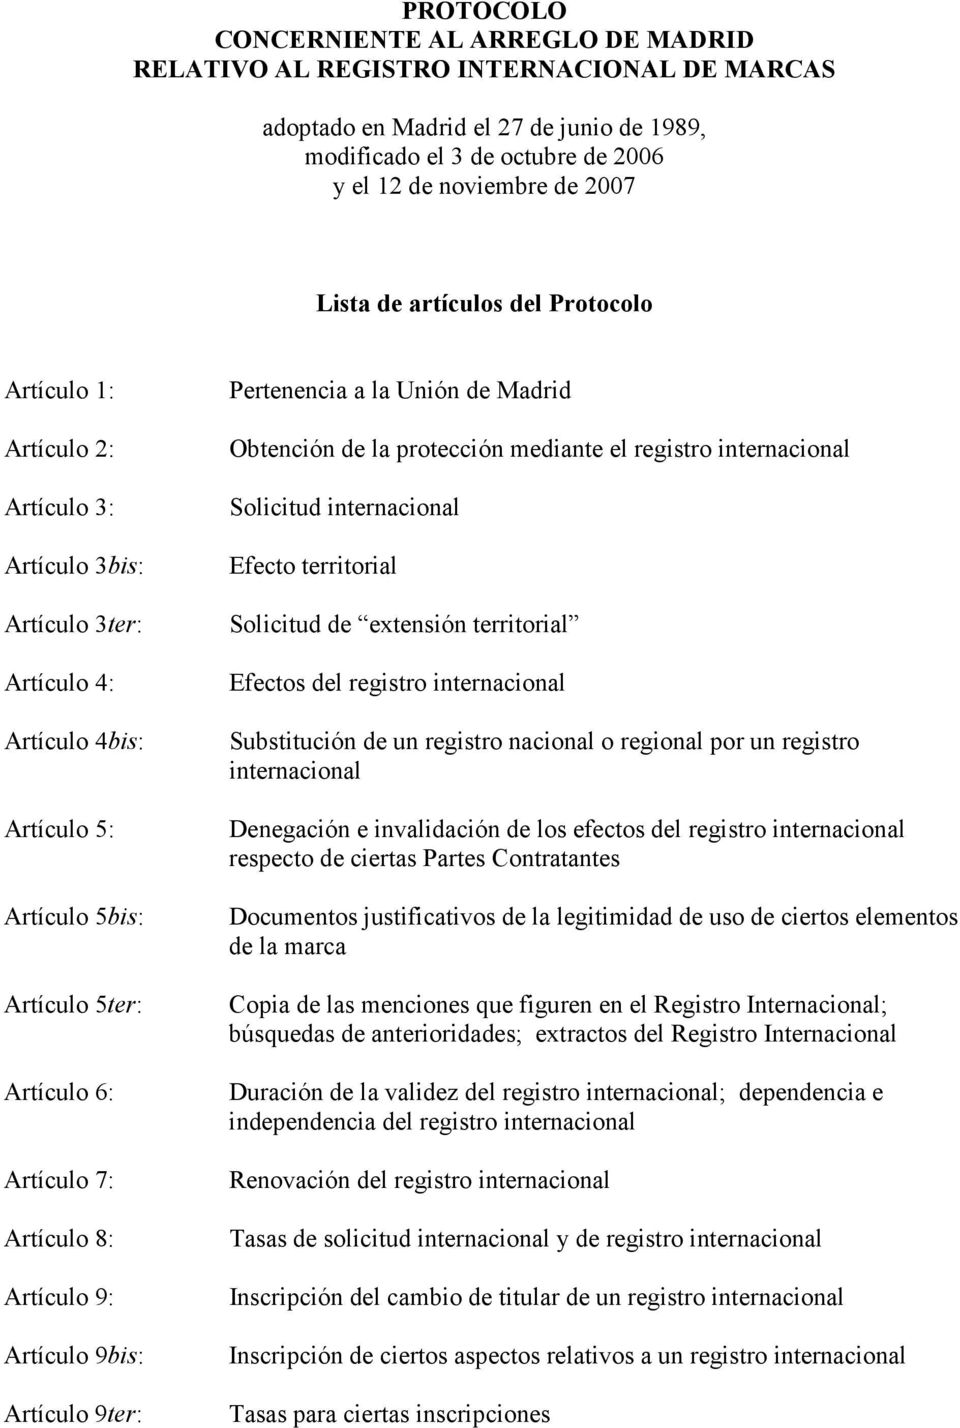 Artículo 8: Artículo 9: Artículo 9bis: Artículo 9ter: Pertenencia a la Unión de Madrid Obtención de la protección mediante el registro internacional Solicitud internacional Efecto territorial